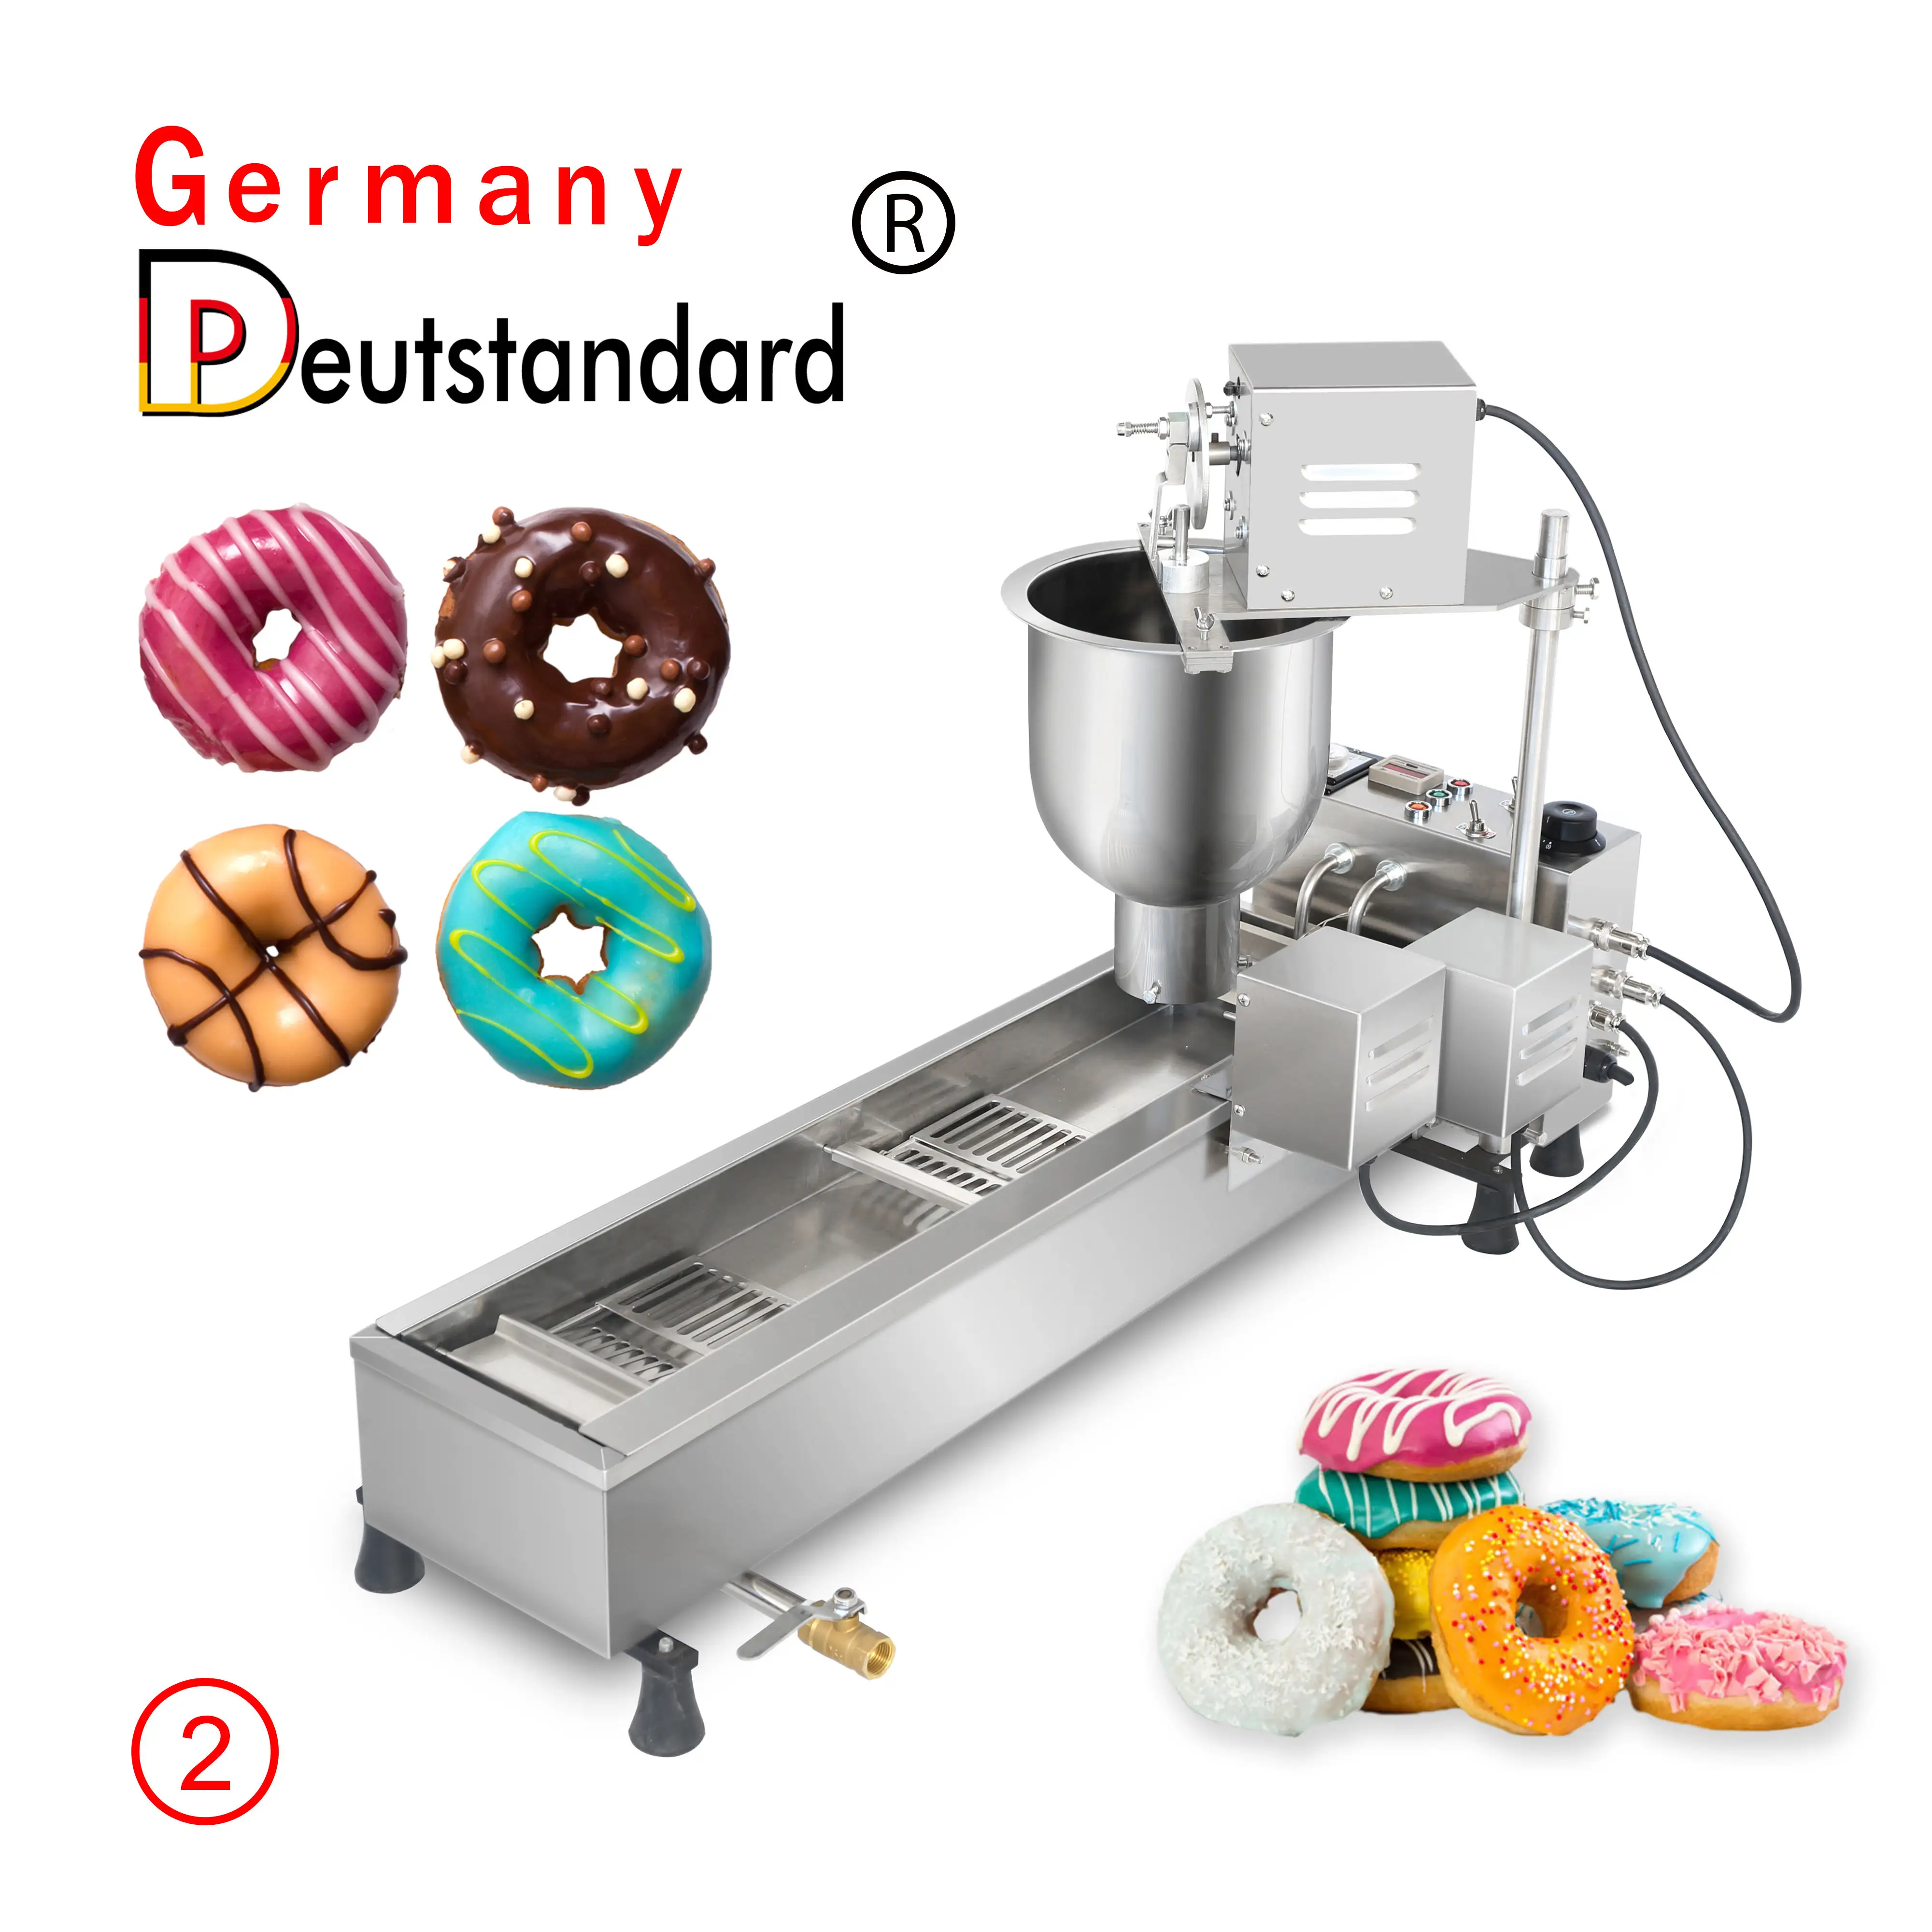 Германия deutstandard NP-2 мини пончик коммерческий 304 из нержавеющей стали 3 размера пончик формы полностью автоматическая производственная линия для пончиков